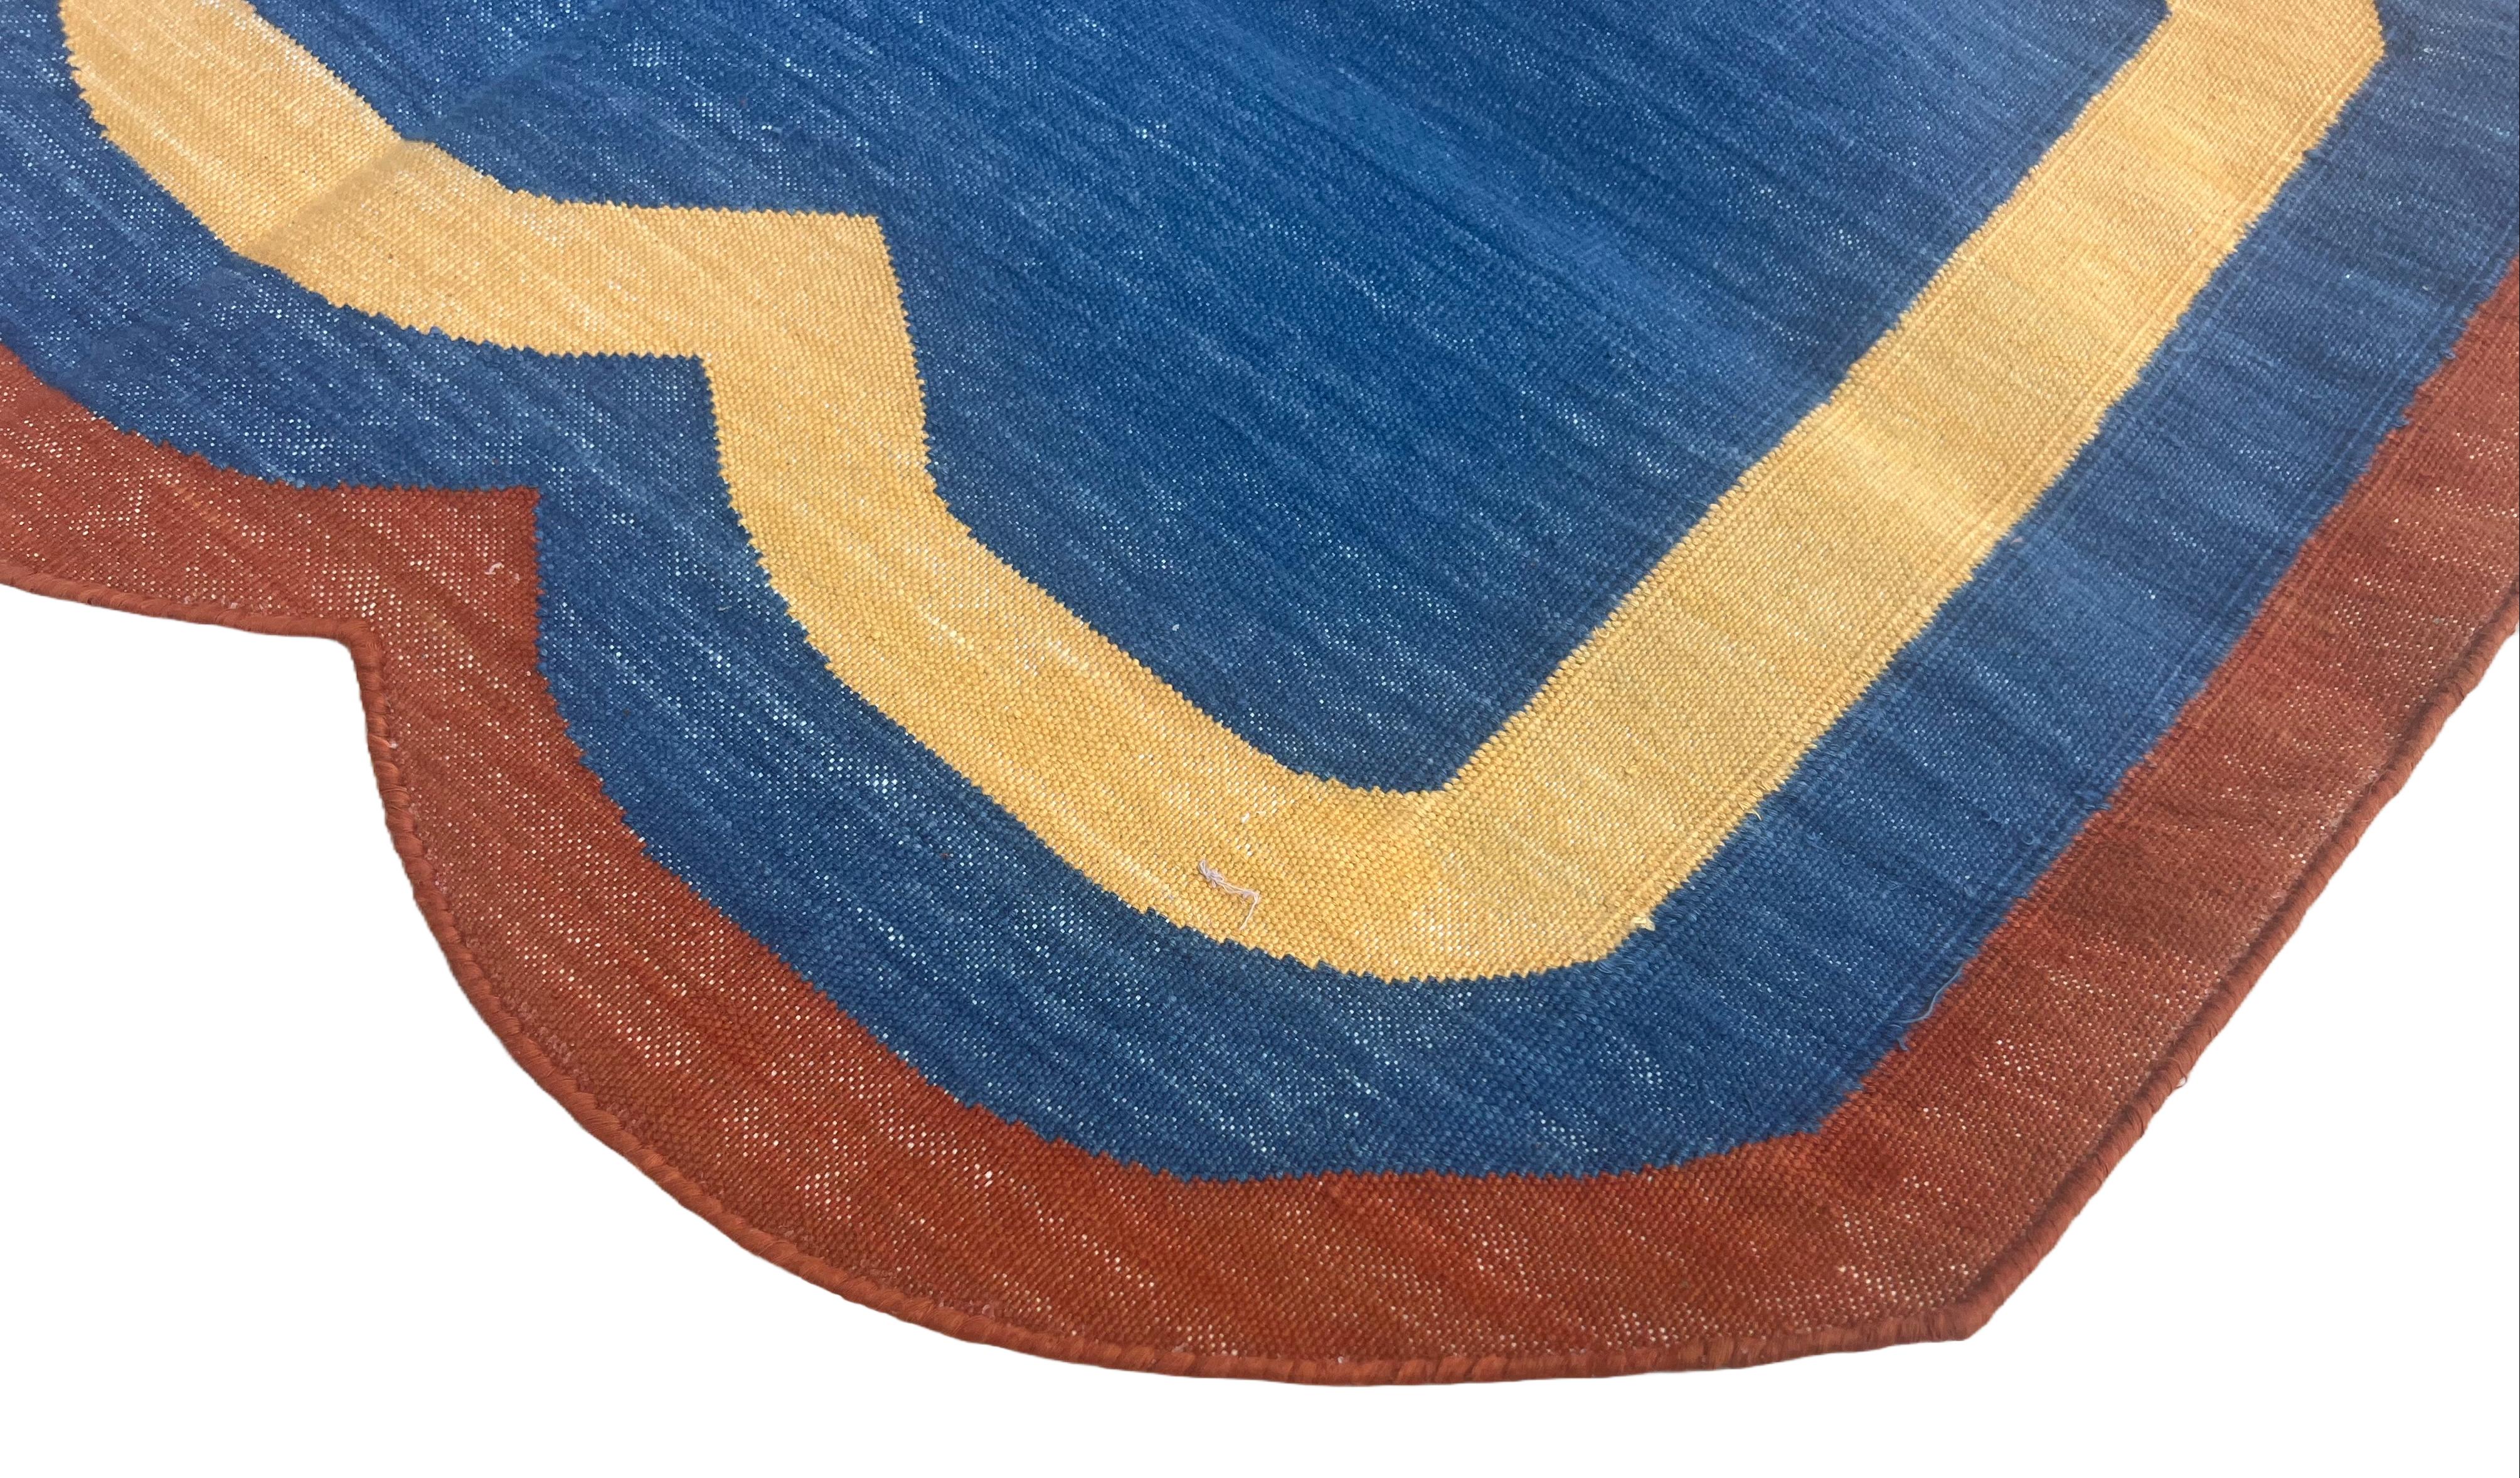 Coton teint végétal  Tapis indien Dhurrie à rayures festonnées bleu indigo, jaune et rouge terracotta - 2'x3' (60x90cm) 

Ces dhurries spéciales à tissage plat sont tissées à la main avec du fil 100 % coton 15 plis. En raison des techniques de